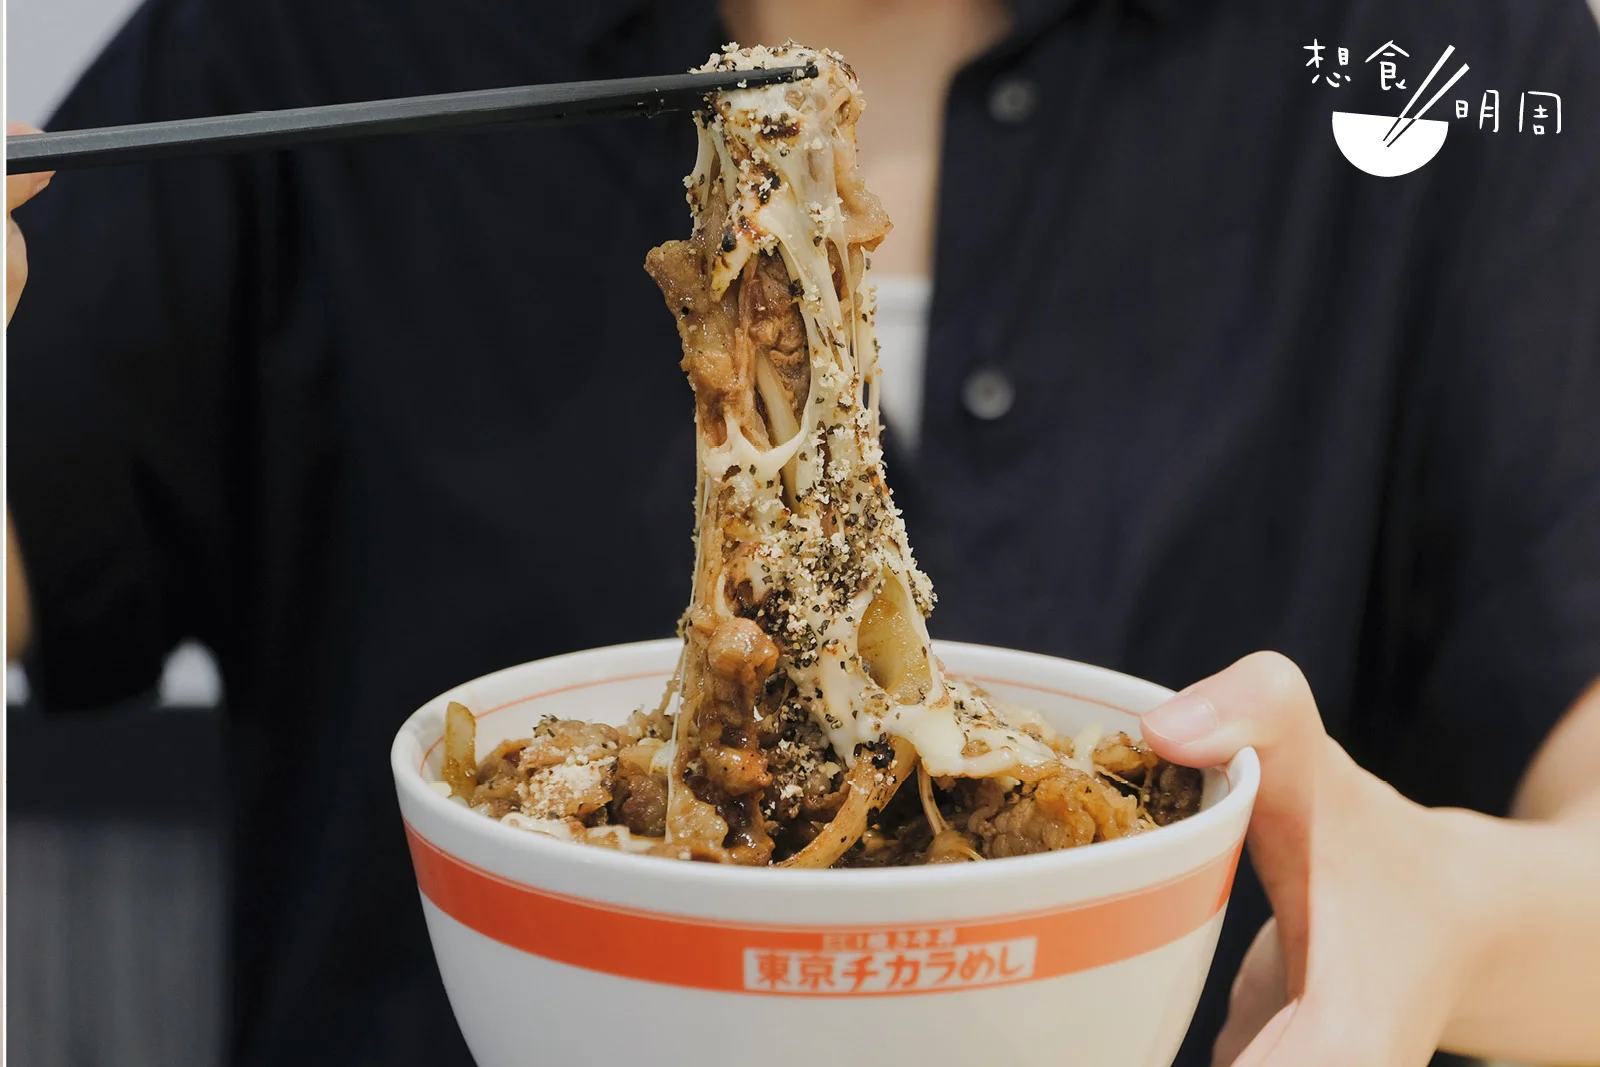 芝士燒牛肉丼// 這是日本Menu的隱藏版，亦算是香港店的限定丼飯，喜歡芝士的你要一試了！（$55）